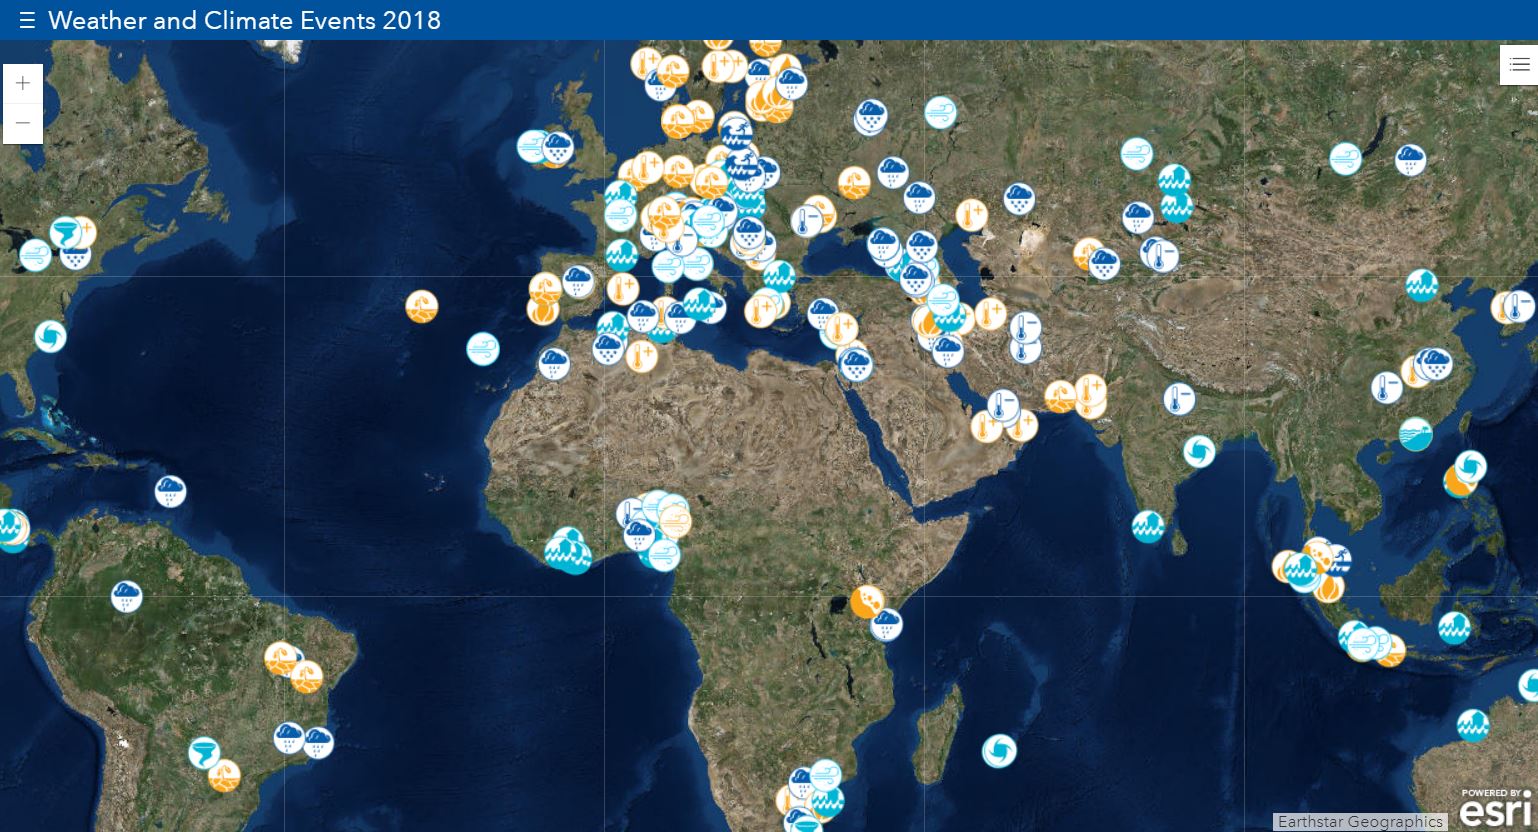 Los eventos climáticos de 2018. Mapa interactivo. Click sobre la imagen para acceder.